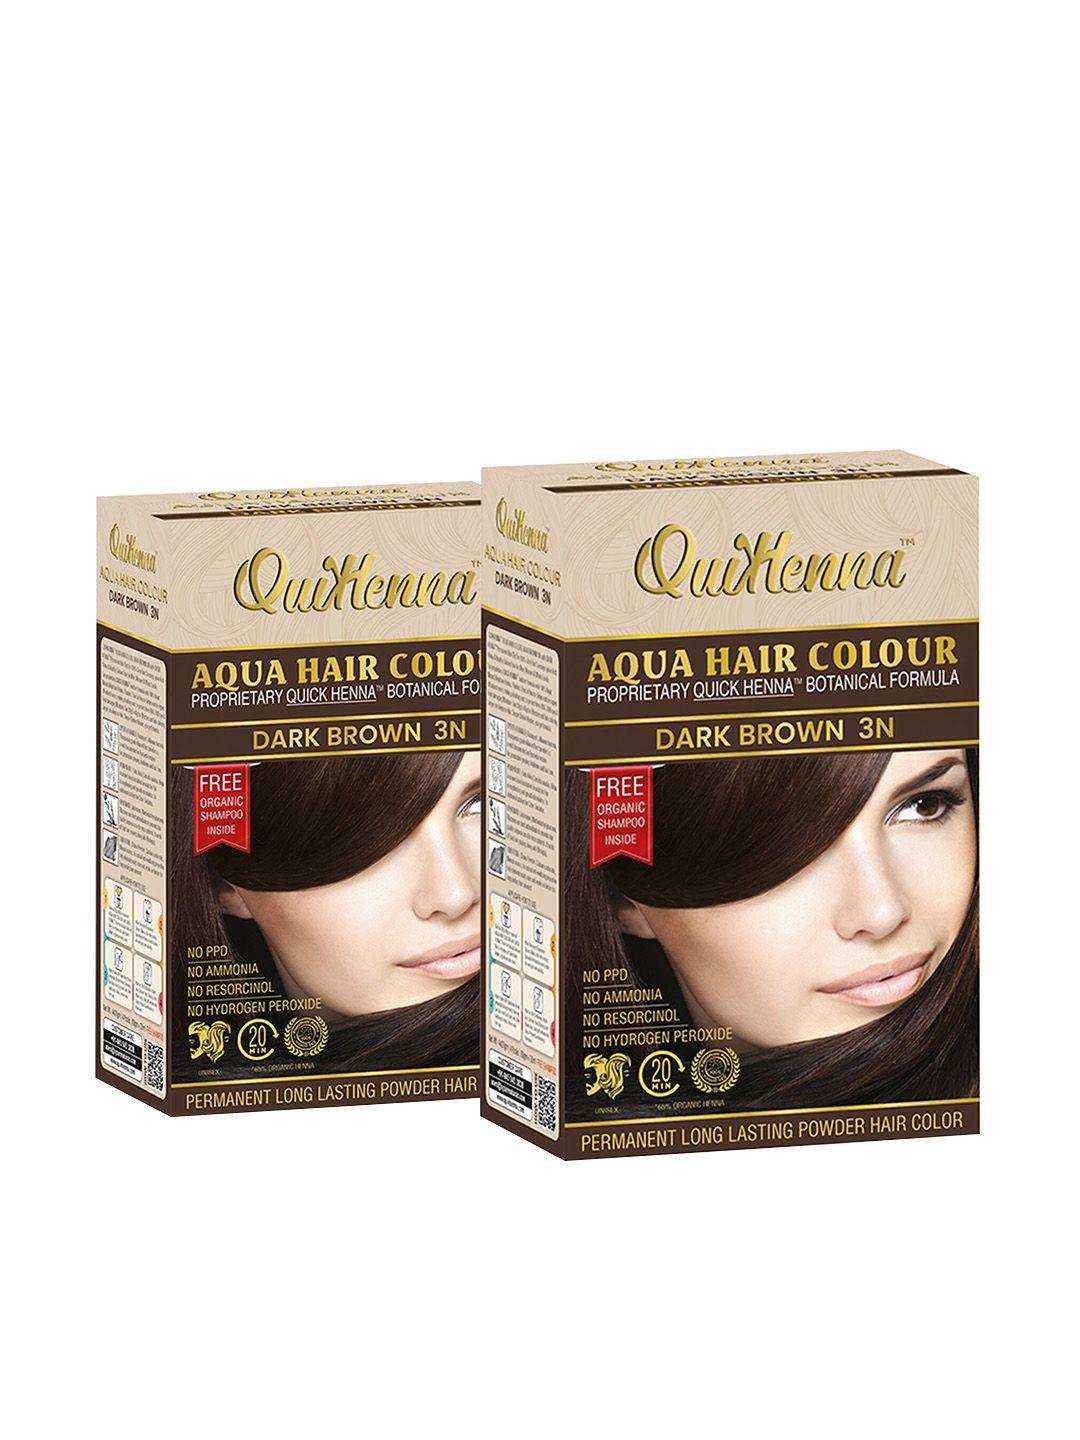 quikhenna set of 2 no ammonia aqua hair colors 110 g each - dark brown 3n